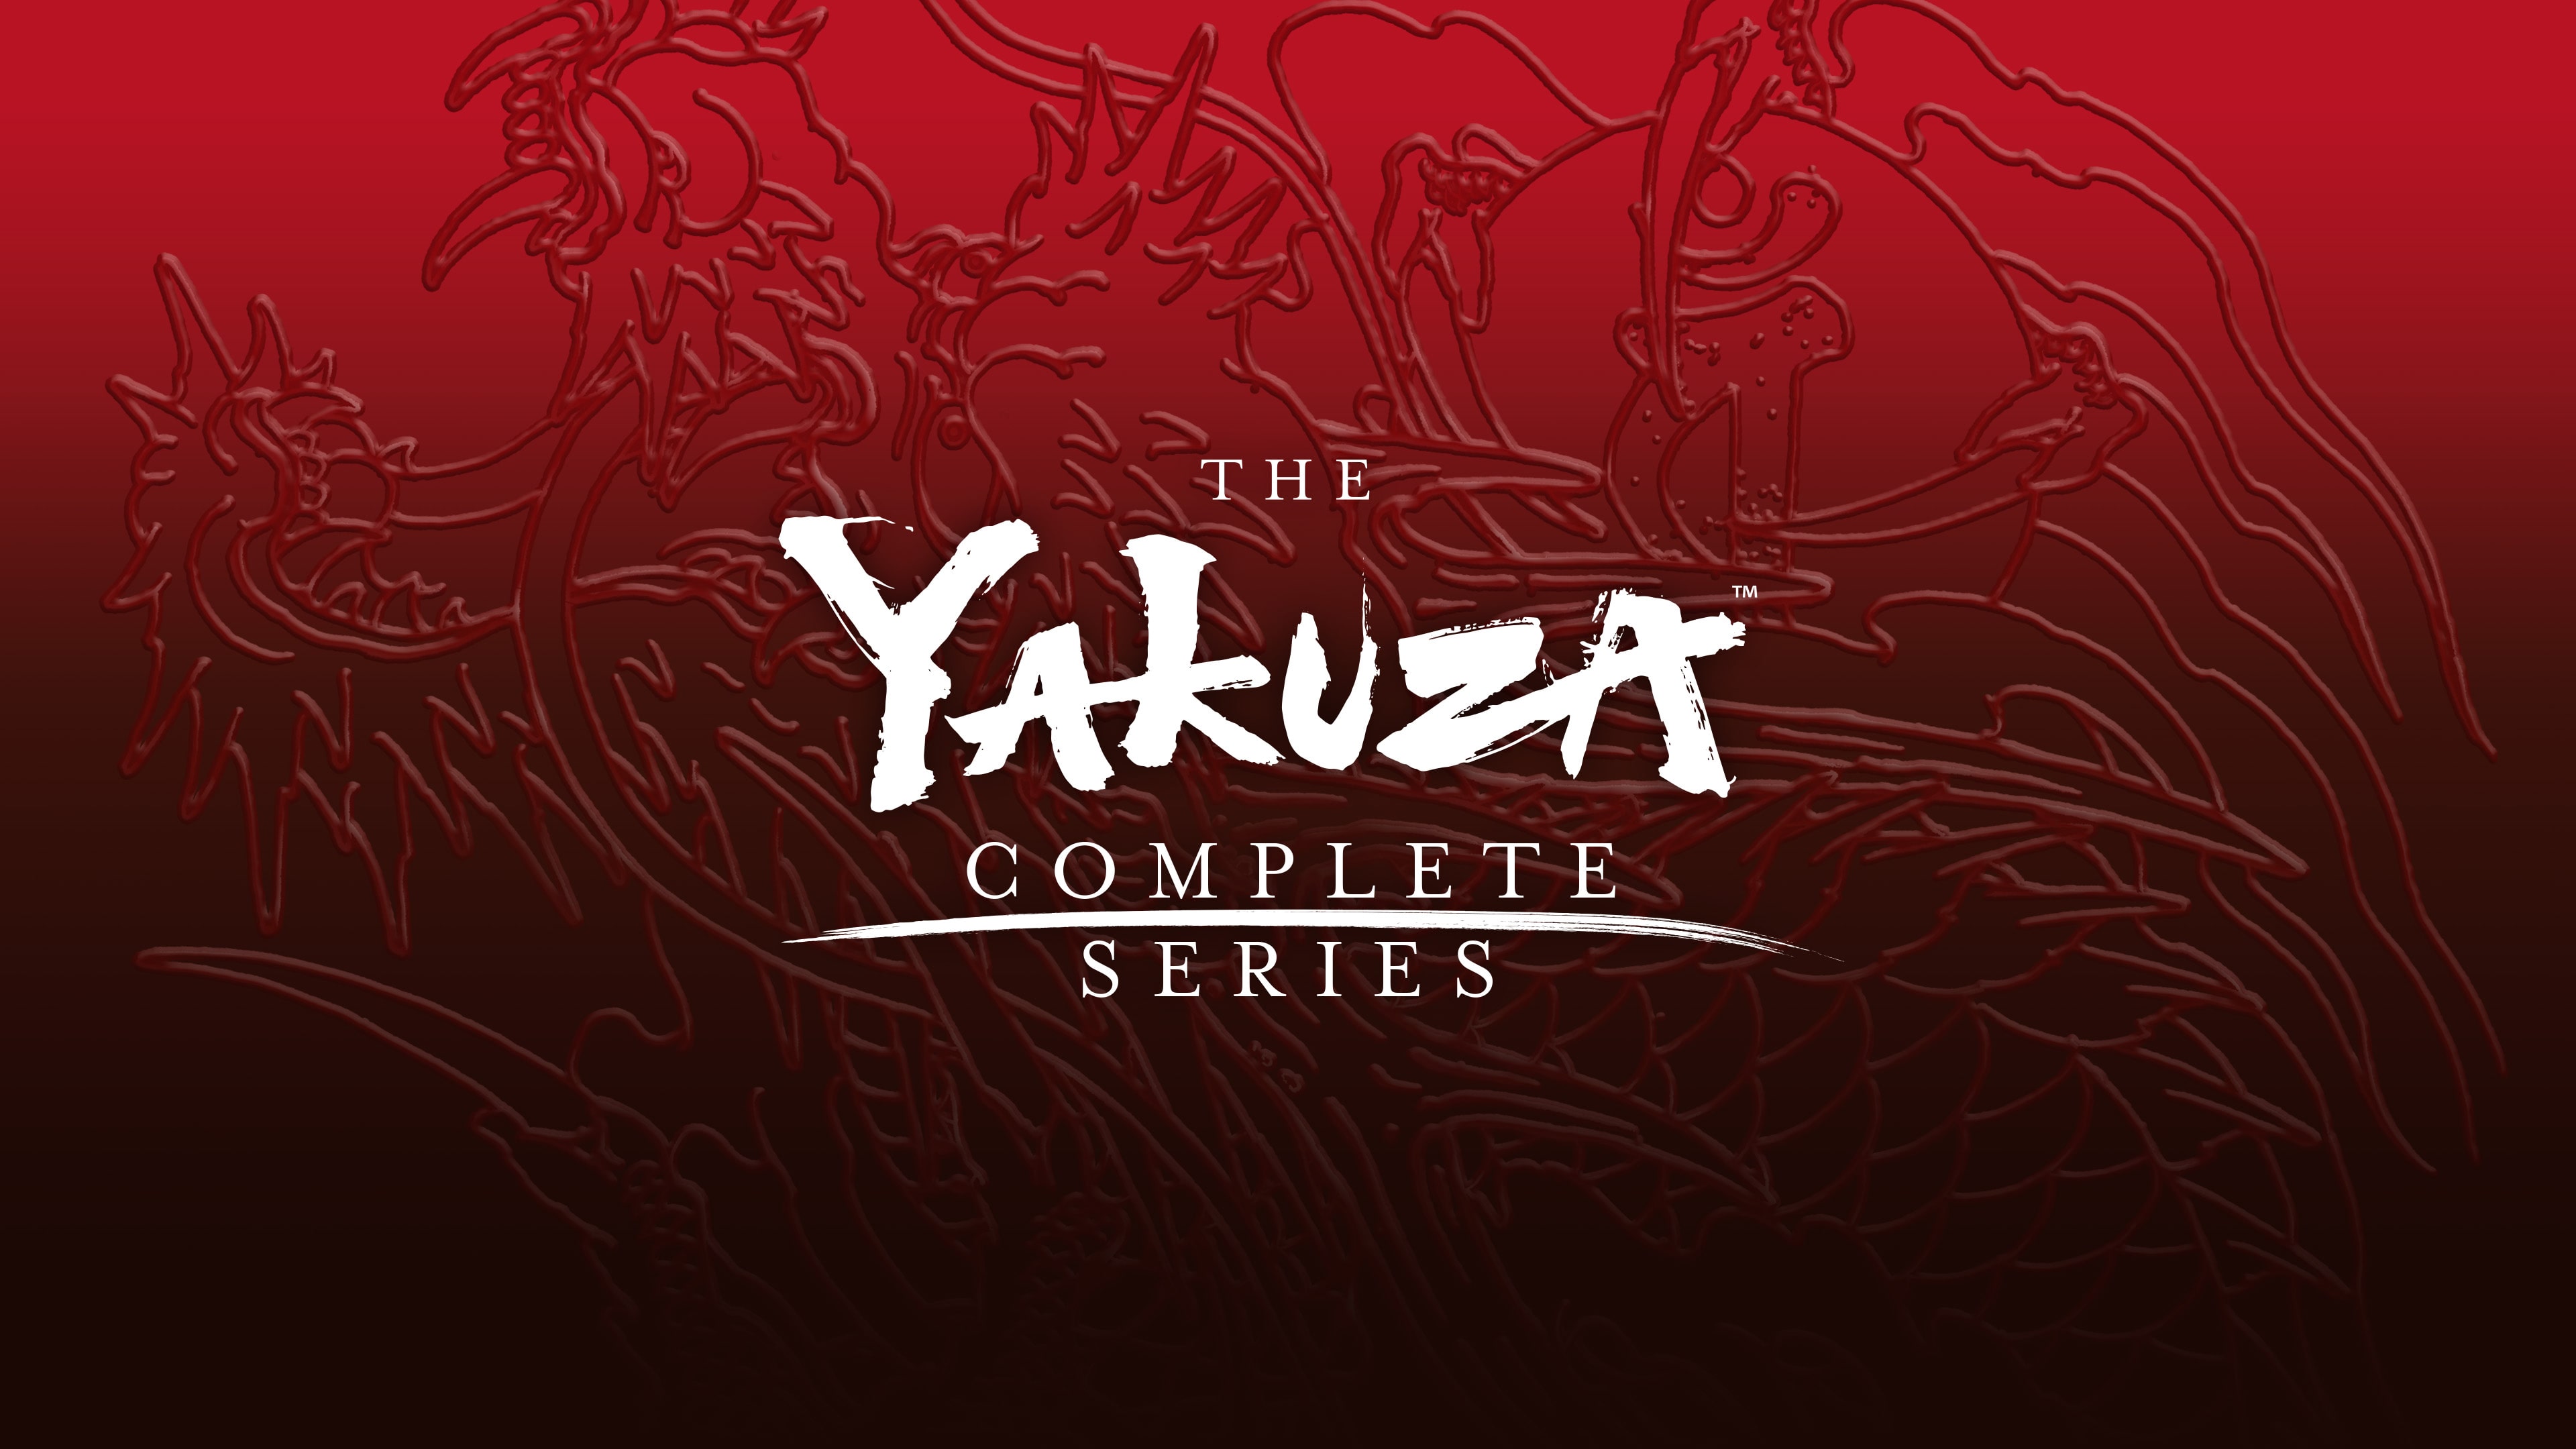 Serie Yakuza completa